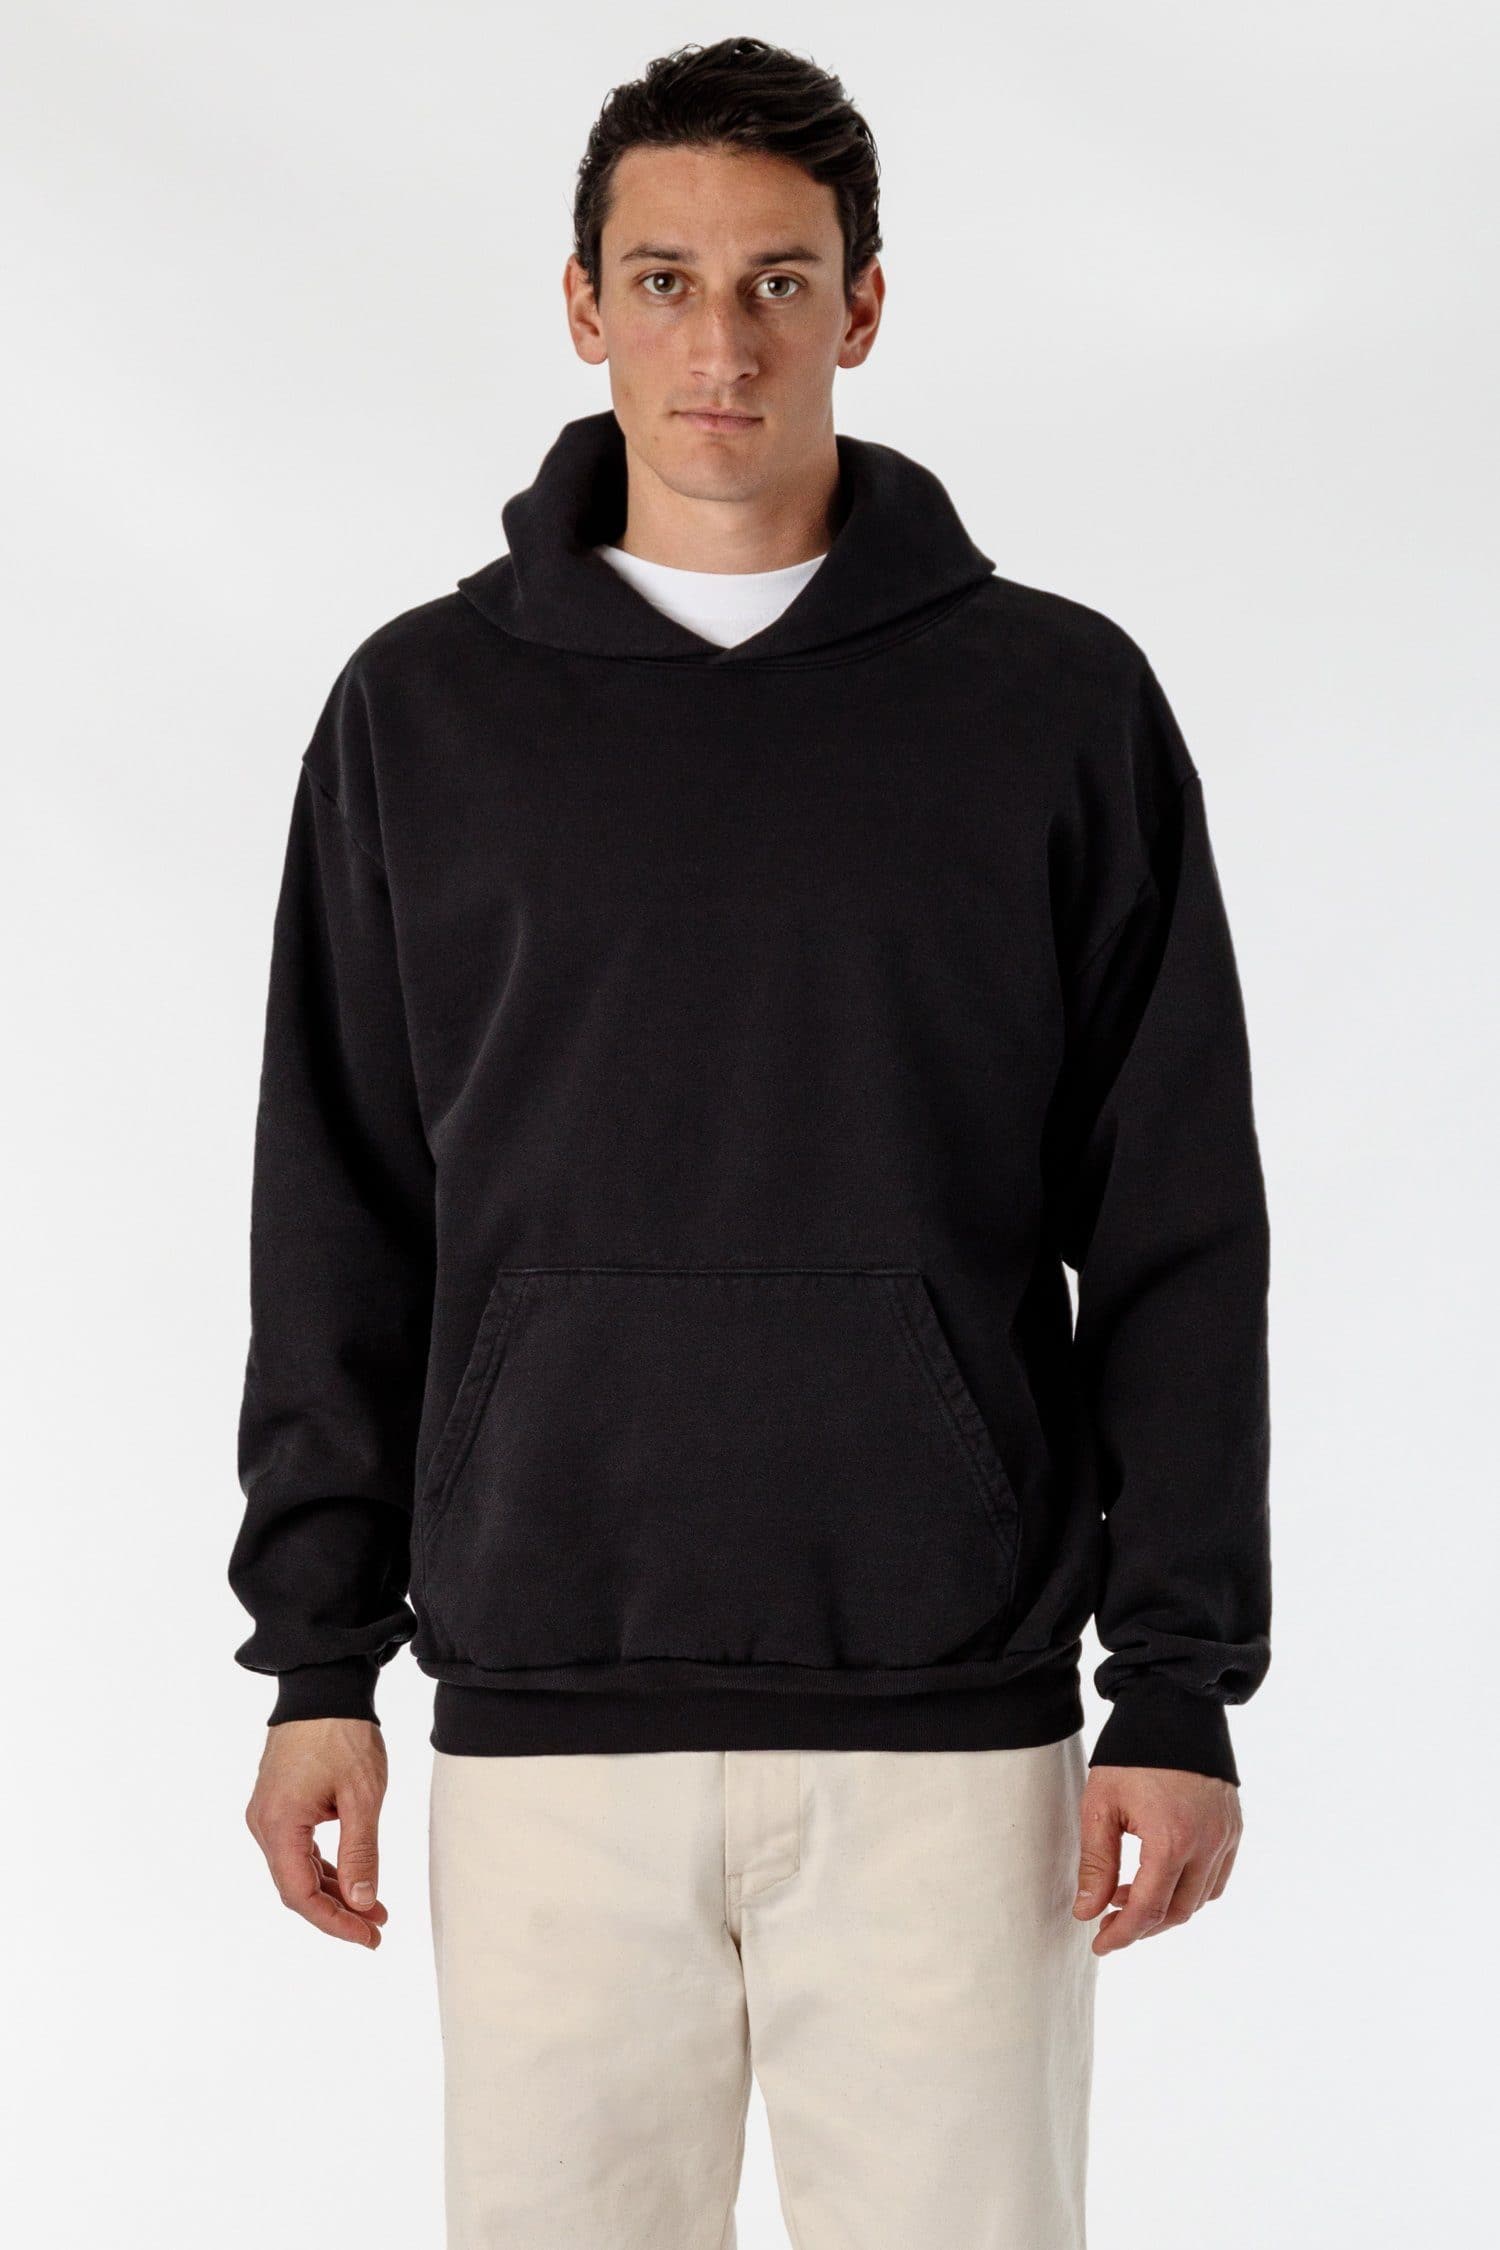 Los Angeles Apparel | Garment Dye Heavy Fleece Hooded Pullover Sweatshirt for Men in Black, Size Large